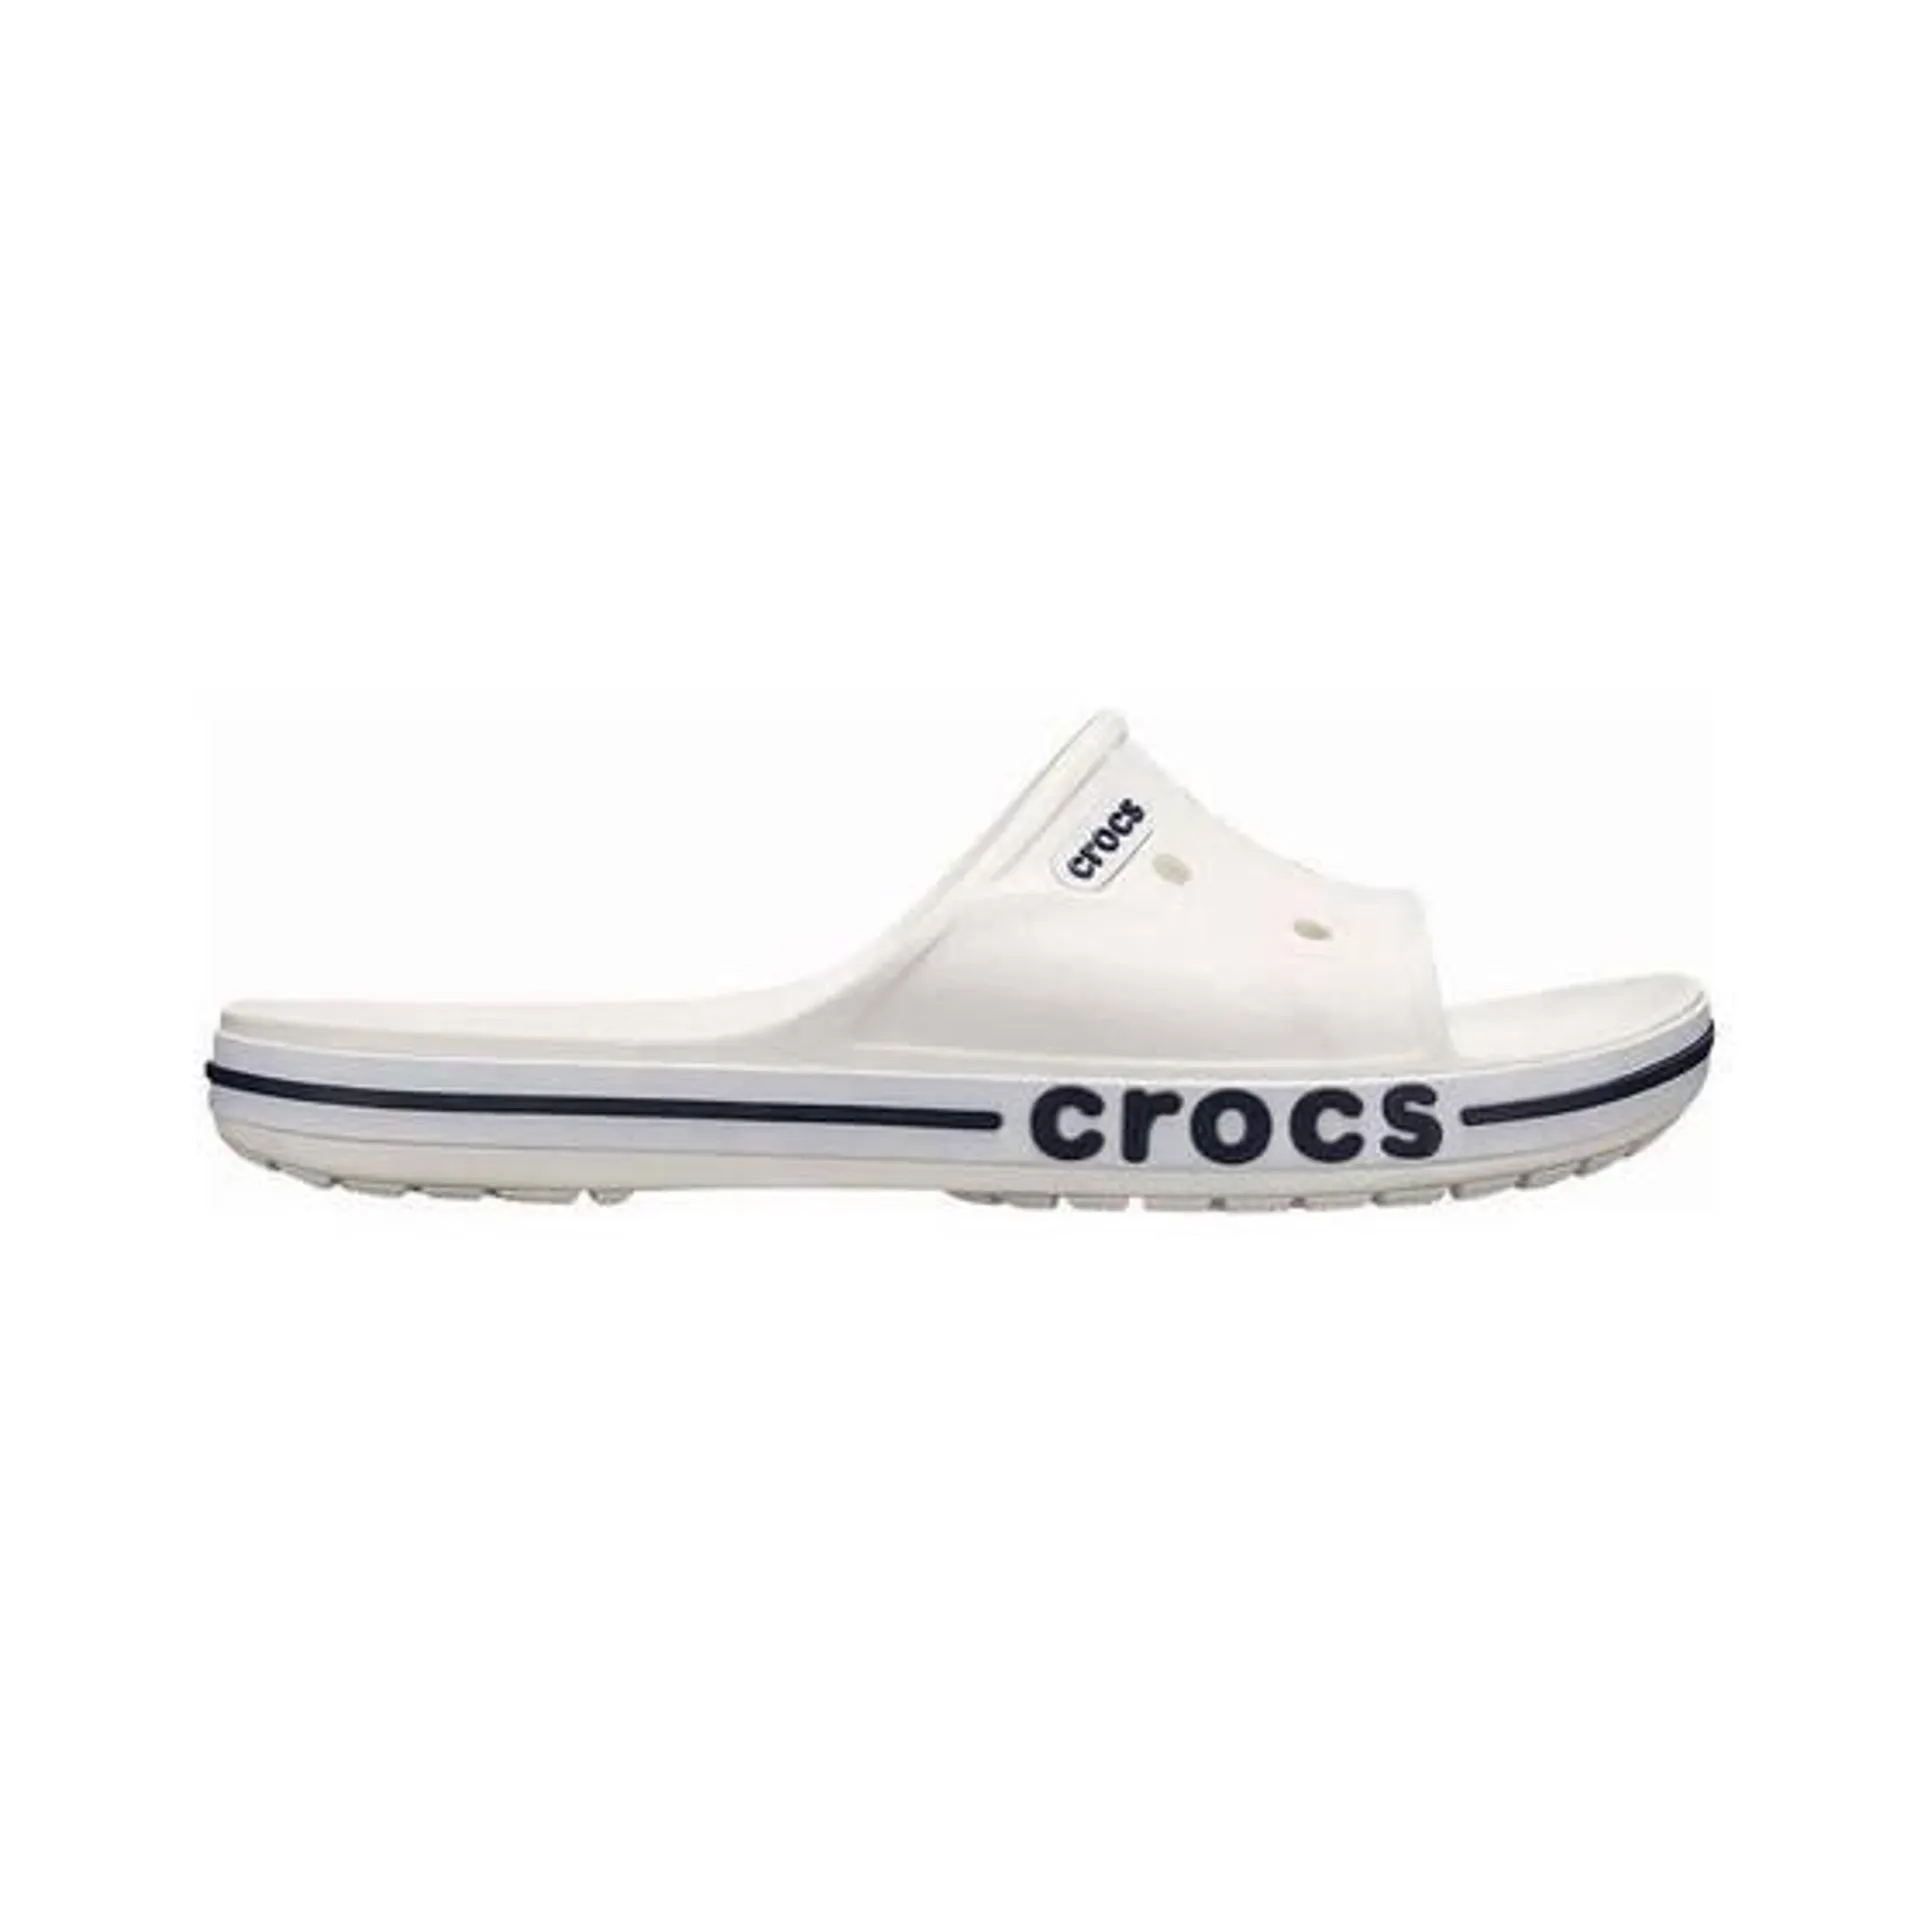 Crocs Unisex Bayaband Slides